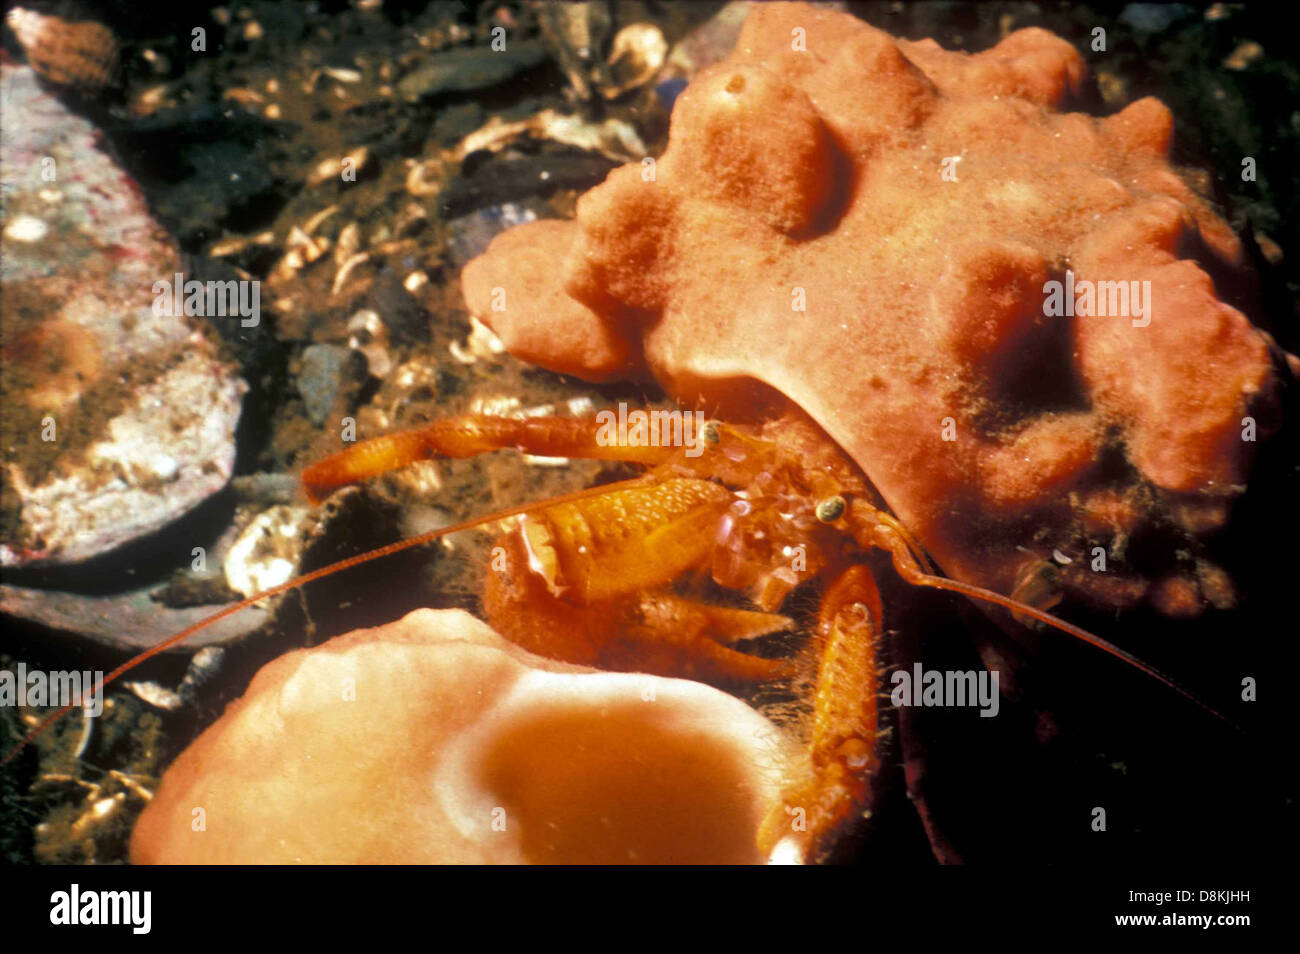 Hermit crab in hermit crab sponge pagurus impressus. Stock Photo